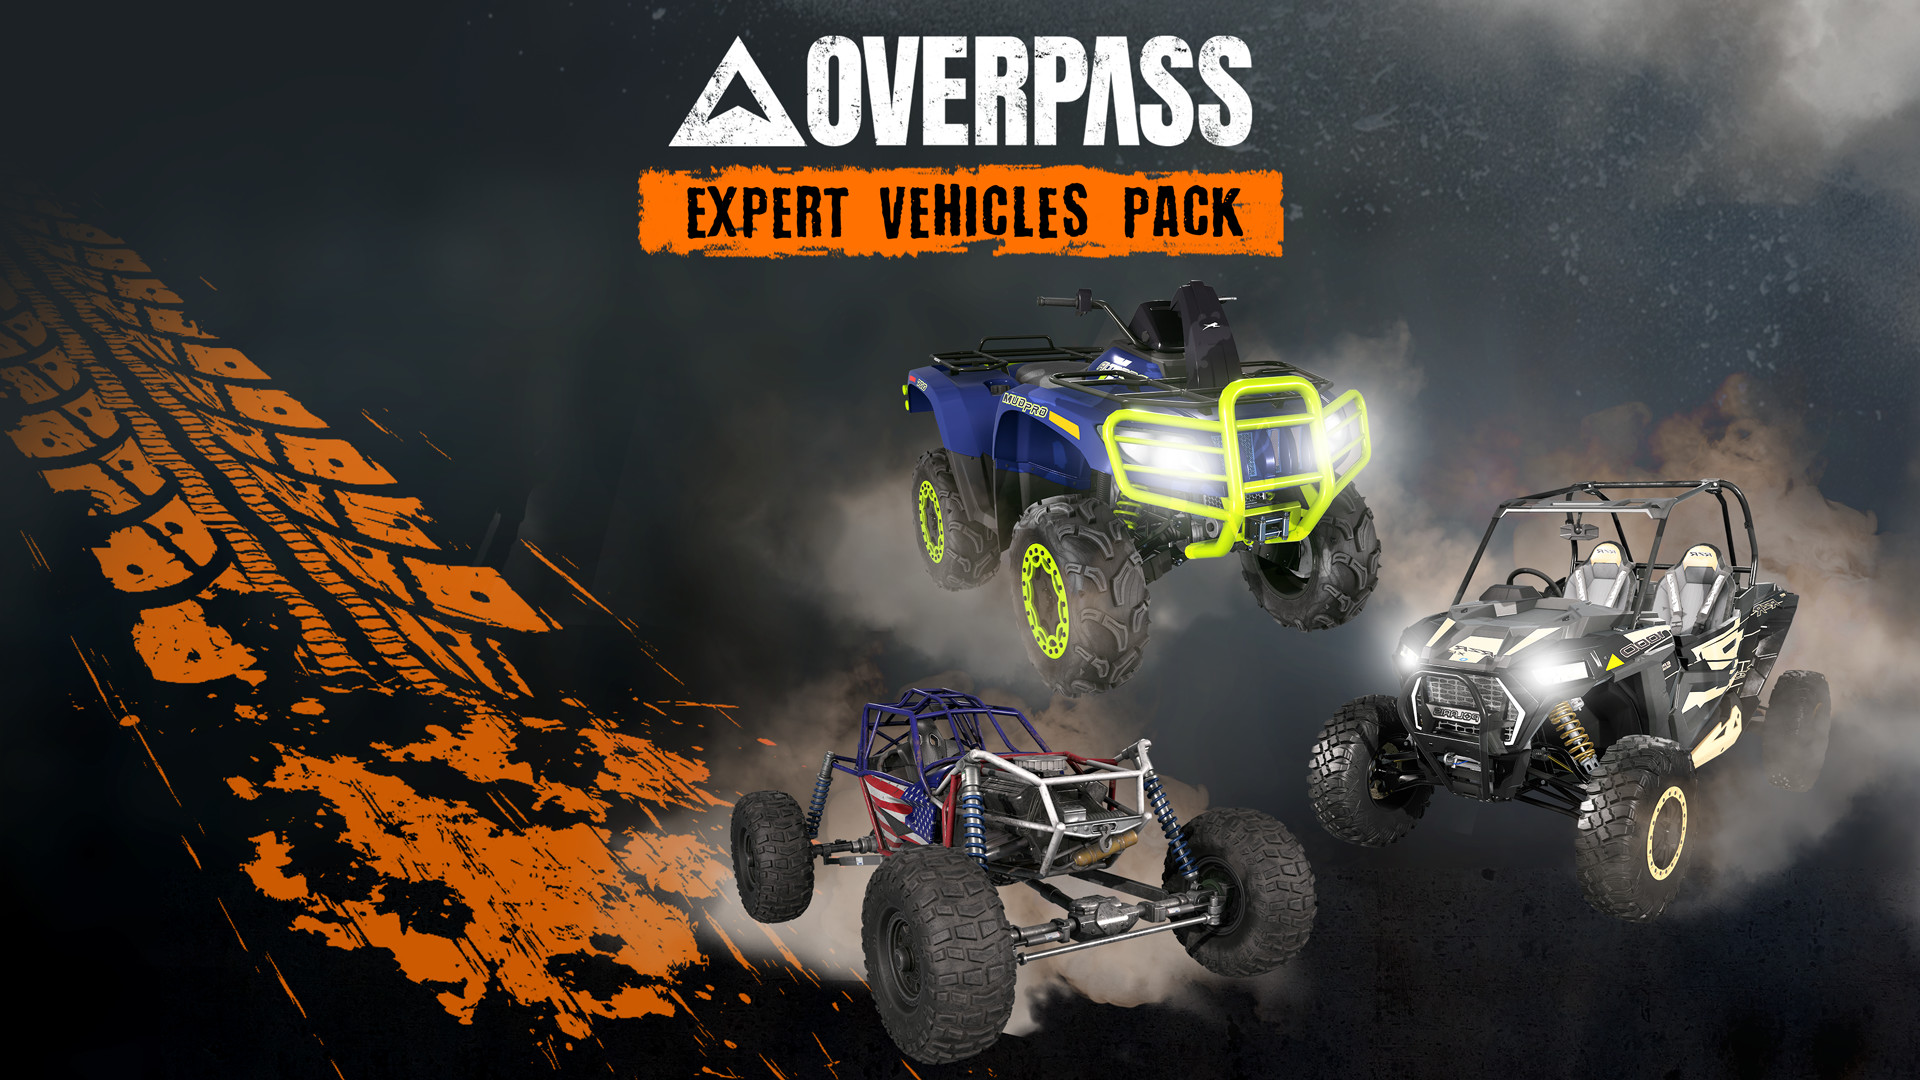 OVERPASS - Expert Vehicles Pack DLC Steam CD Key USD 2.36